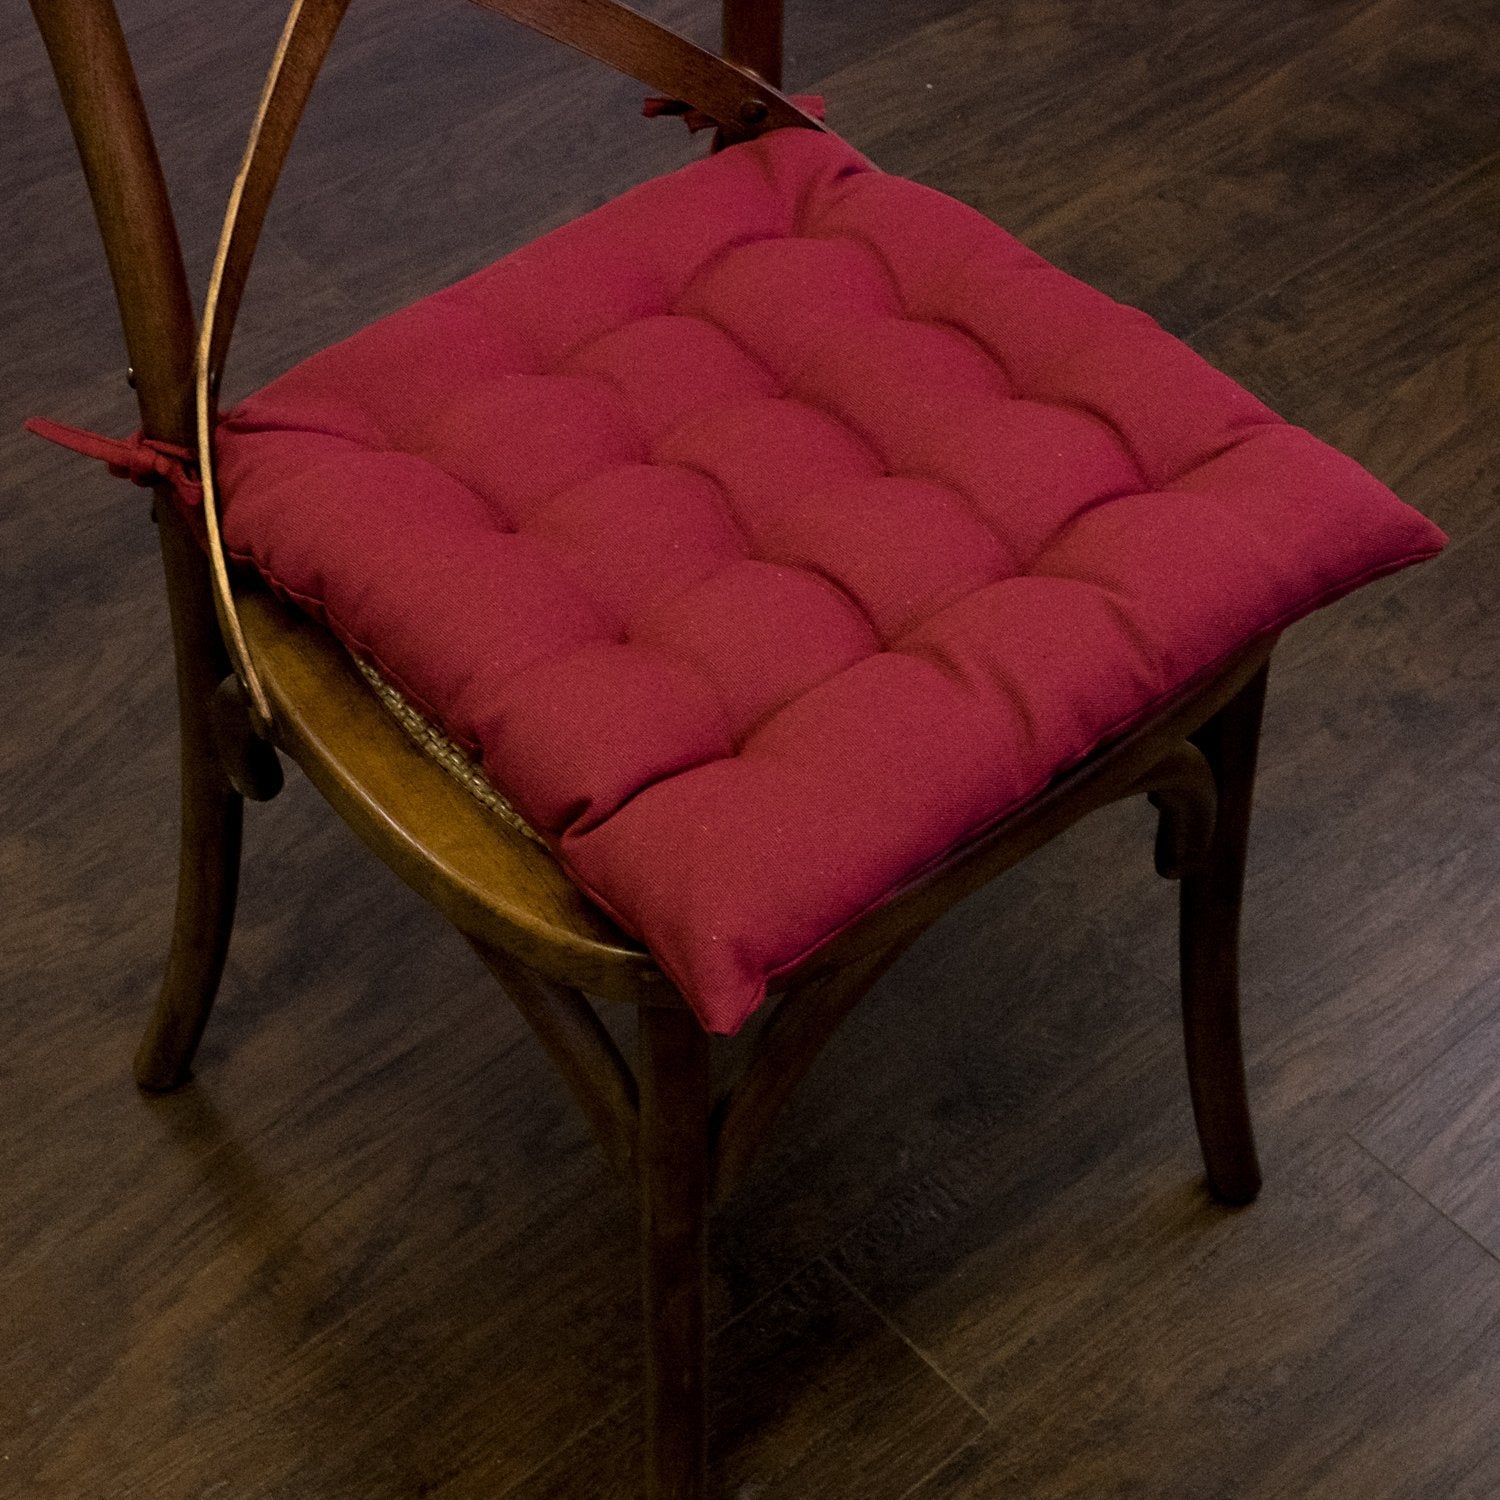 Tufted Chair Cushion Set 16 By 16 Burgundy - Chair